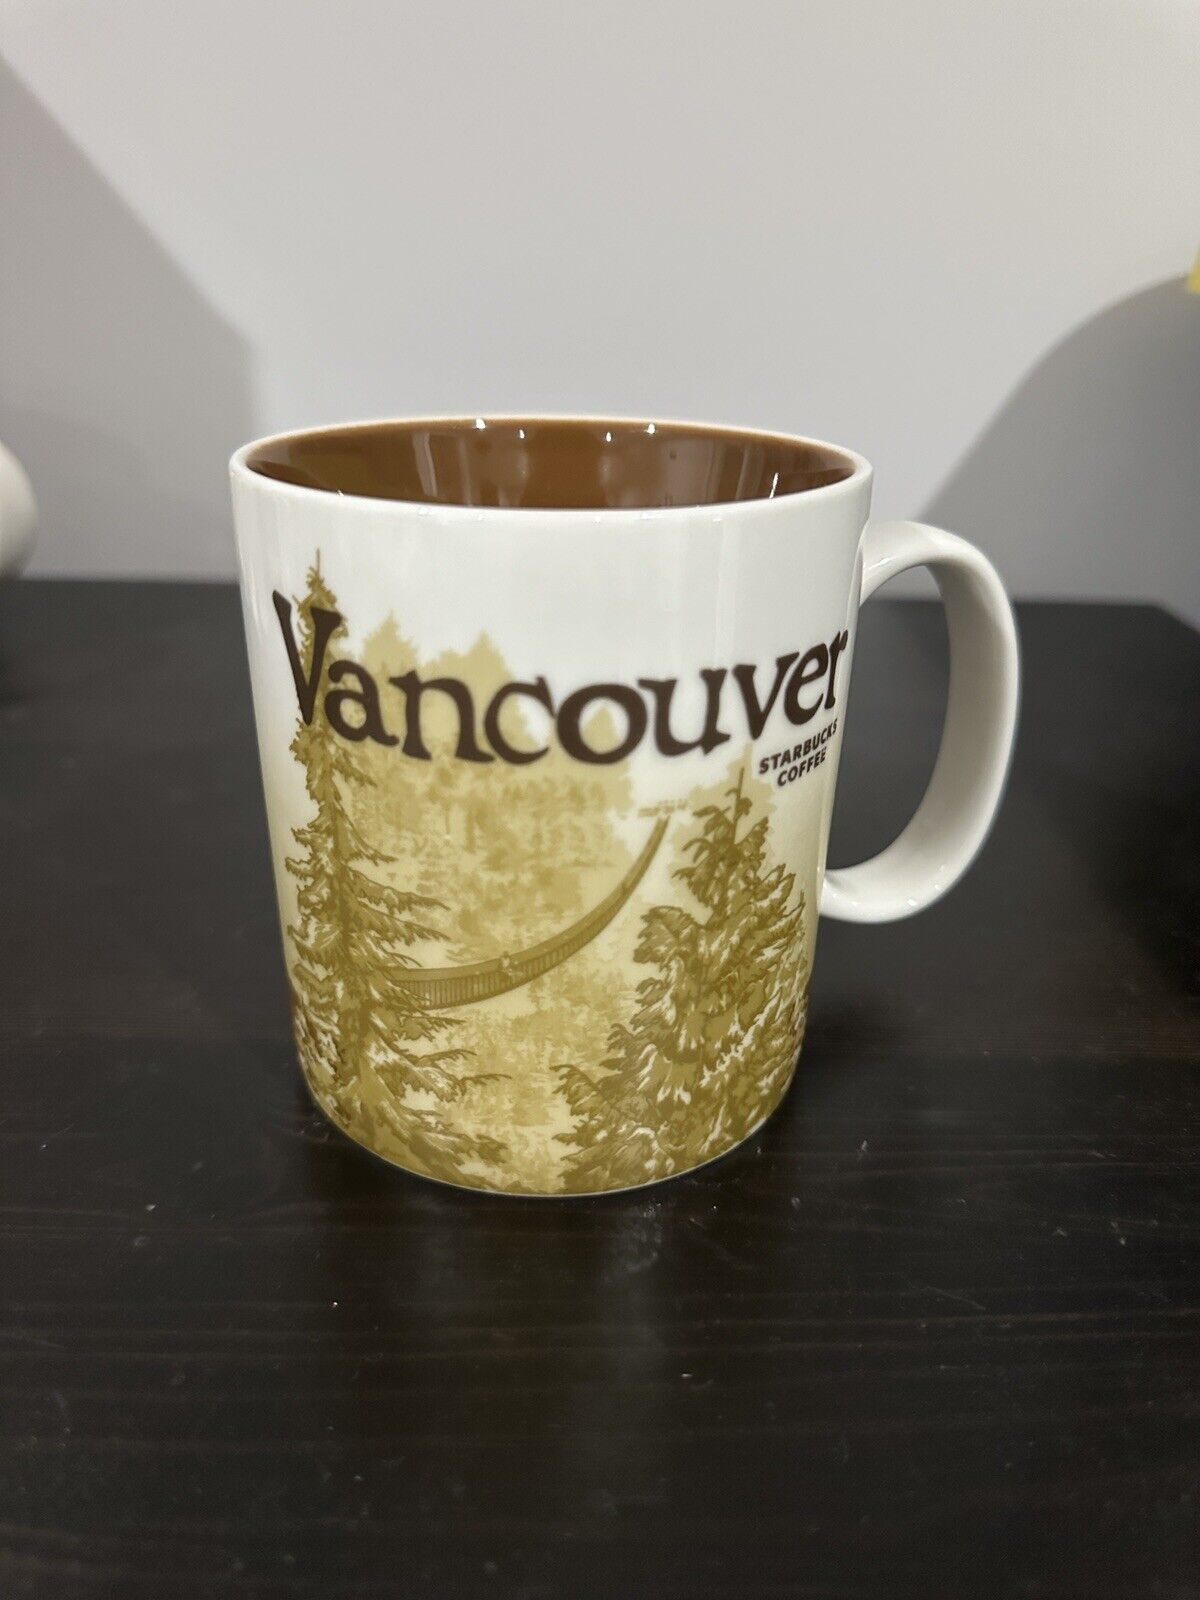 Starbucks Coffee Mug VANCOUVER Collector Series 2009 16 oz